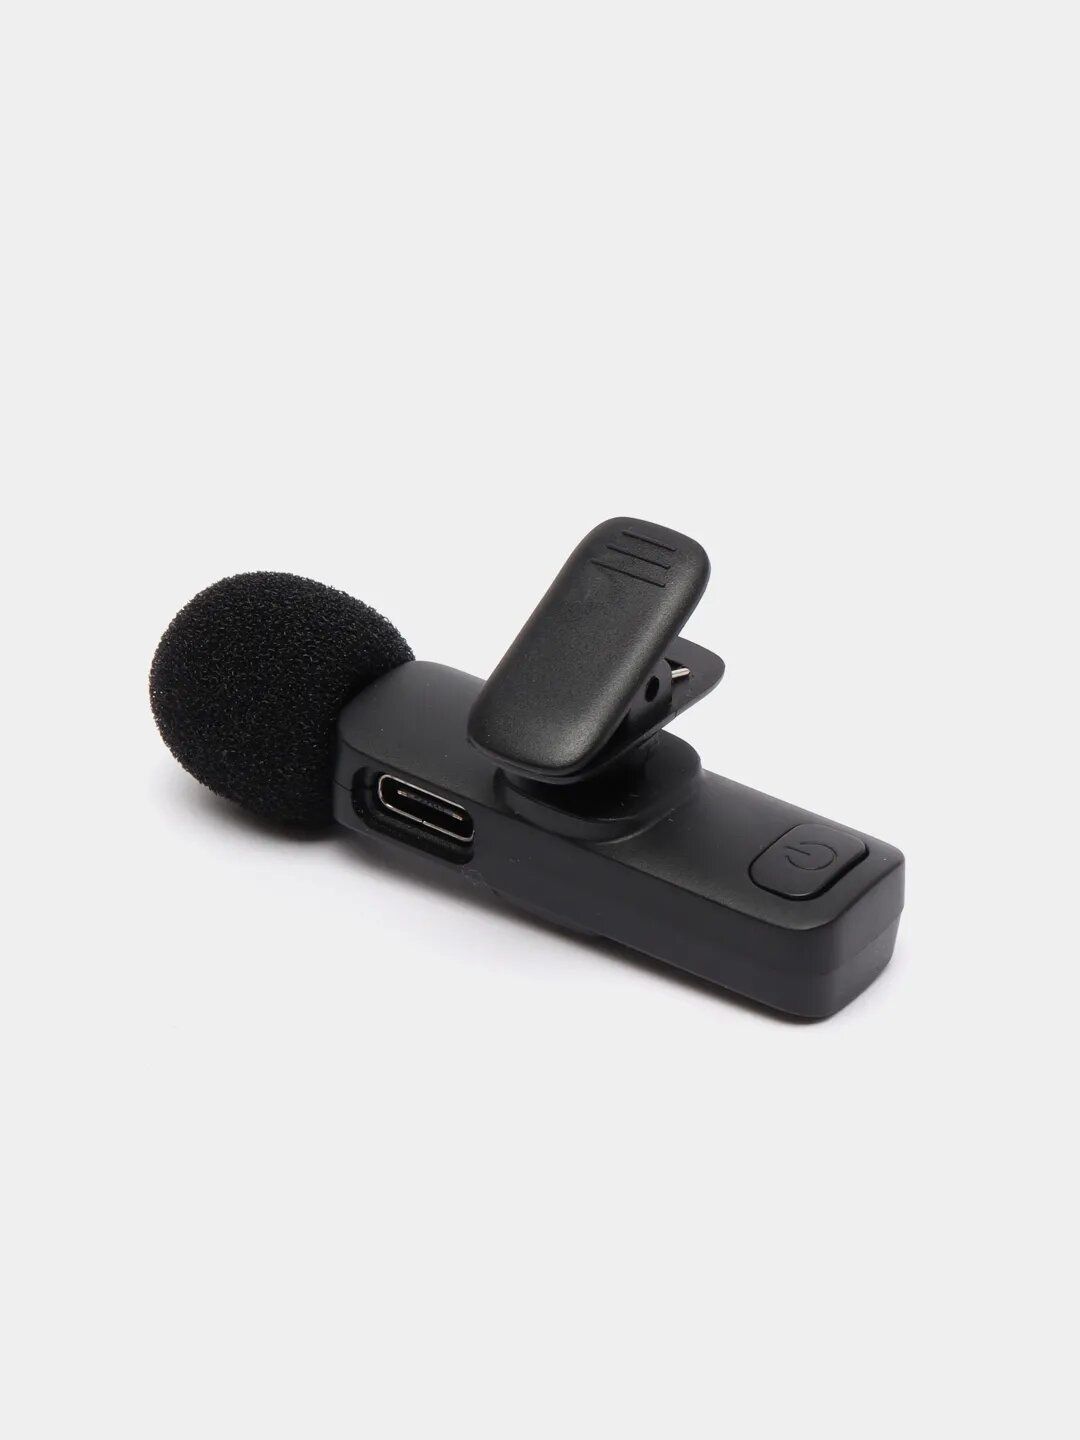 Микрофон петличка беспроводной K9, 2-микрофона, для IpHone зарядкаТси